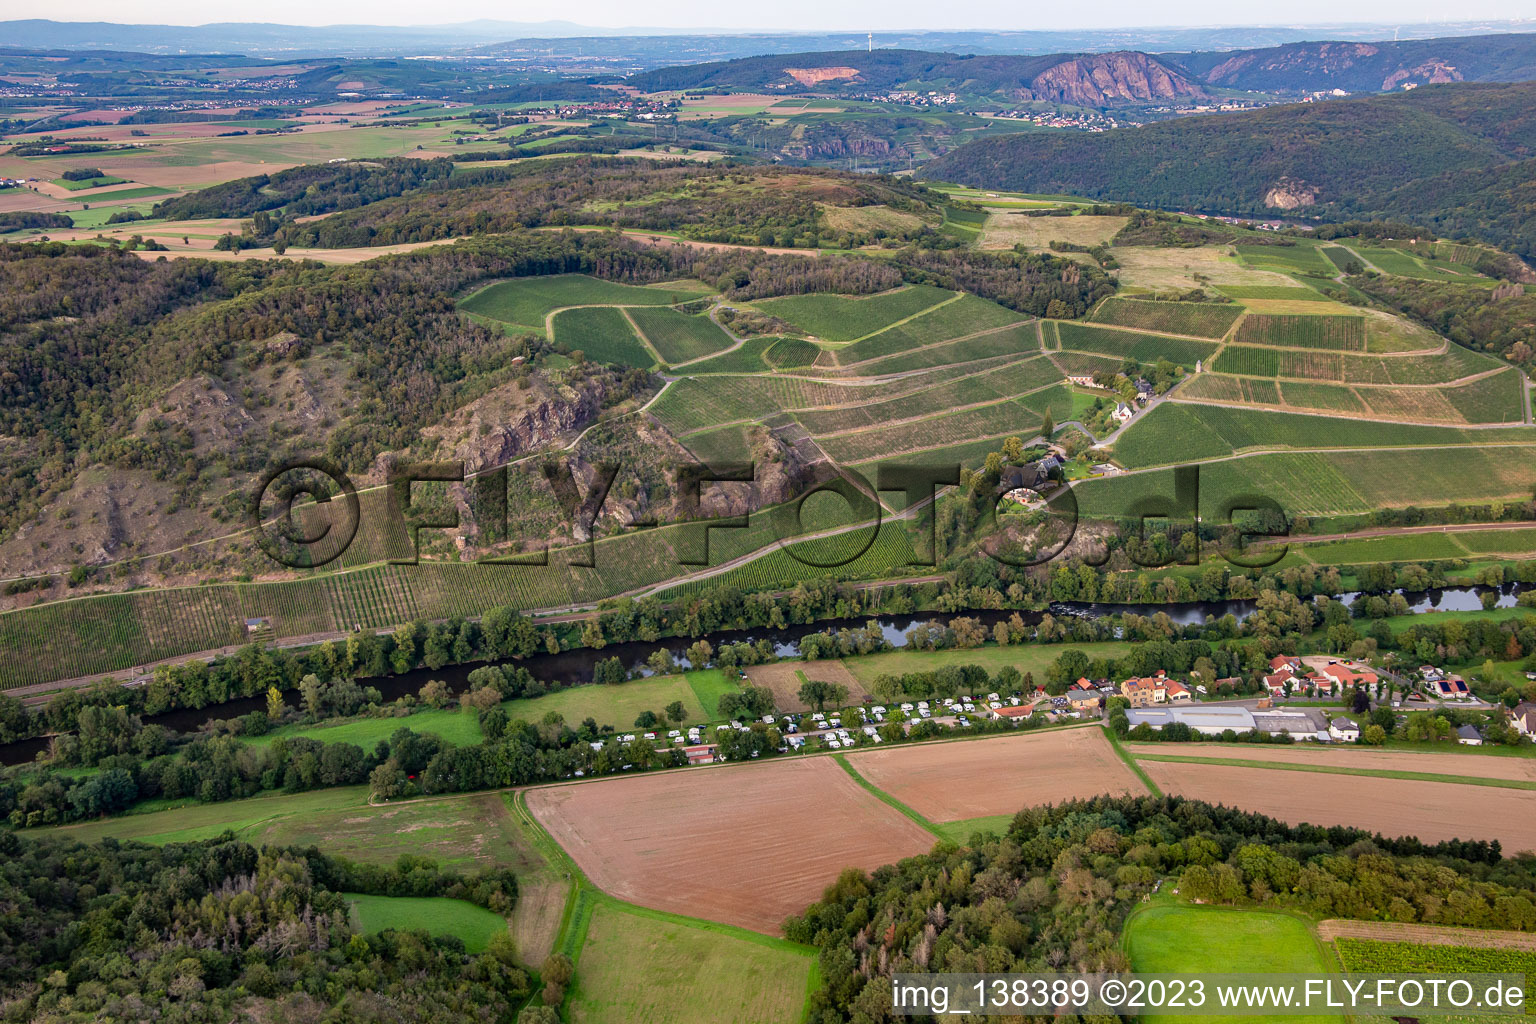 Vue aérienne de Camping Nahetal depuis le sud à Oberhausen an der Nahe dans le département Rhénanie-Palatinat, Allemagne